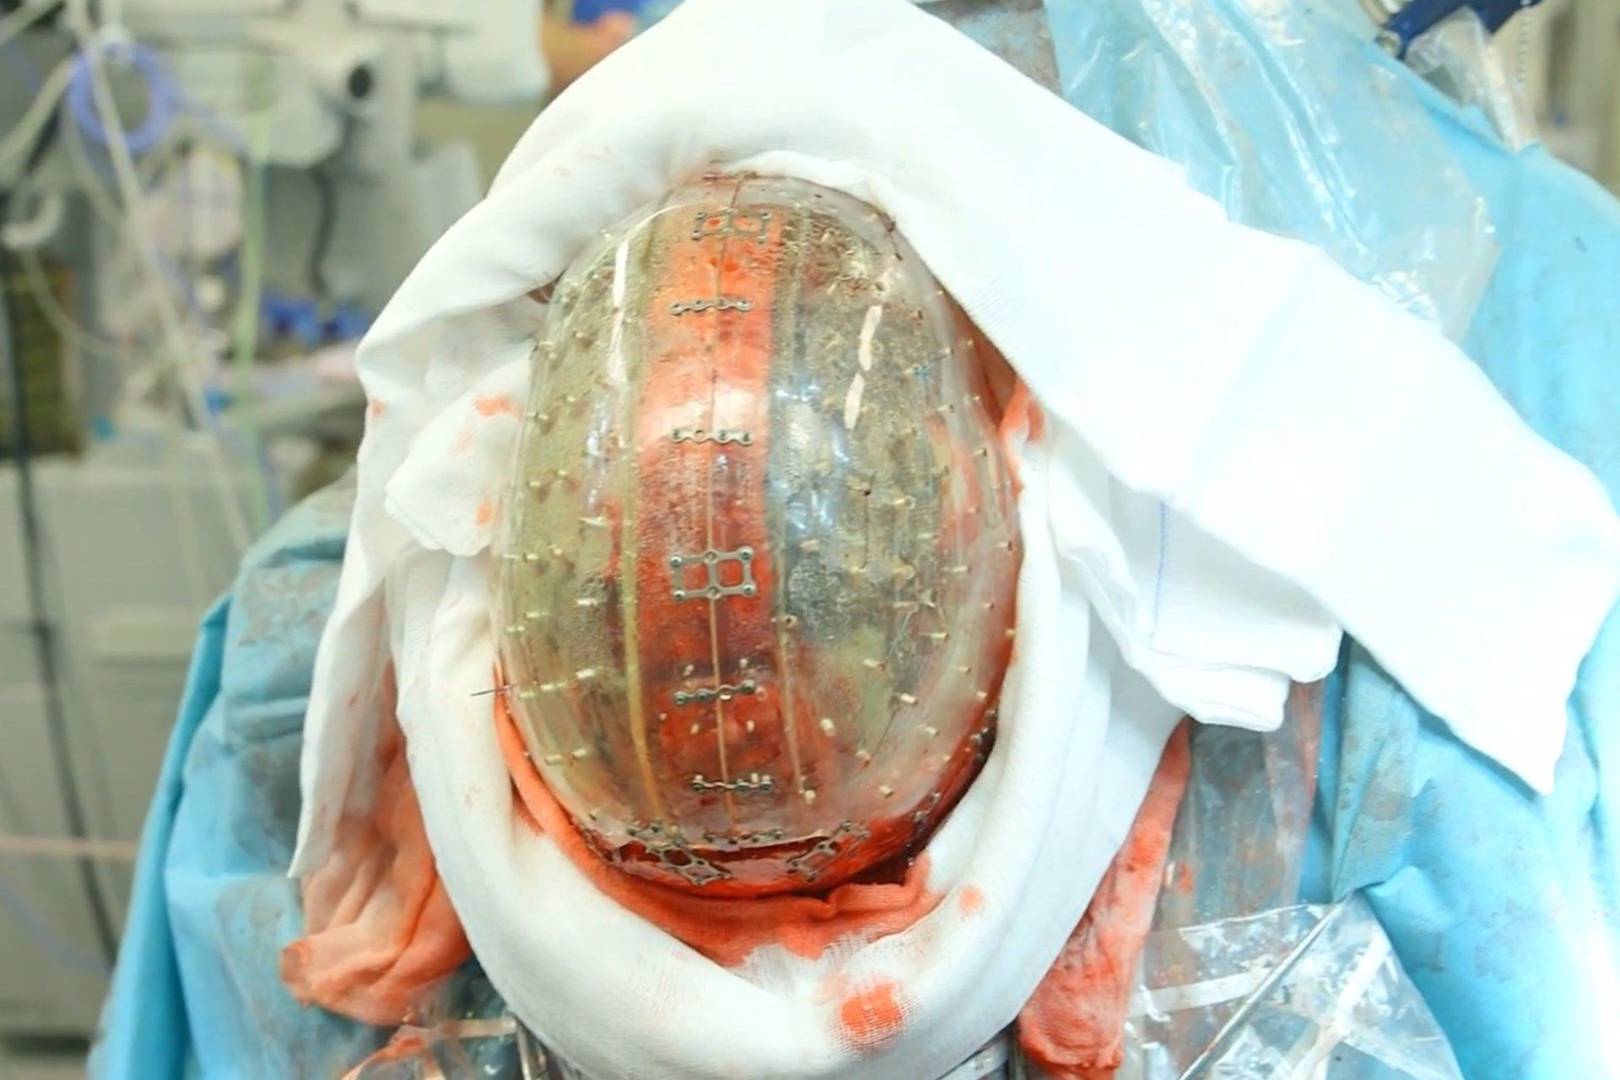 Lekarze zastąpili pacjentce fragment czaszki wydrukiem 3D